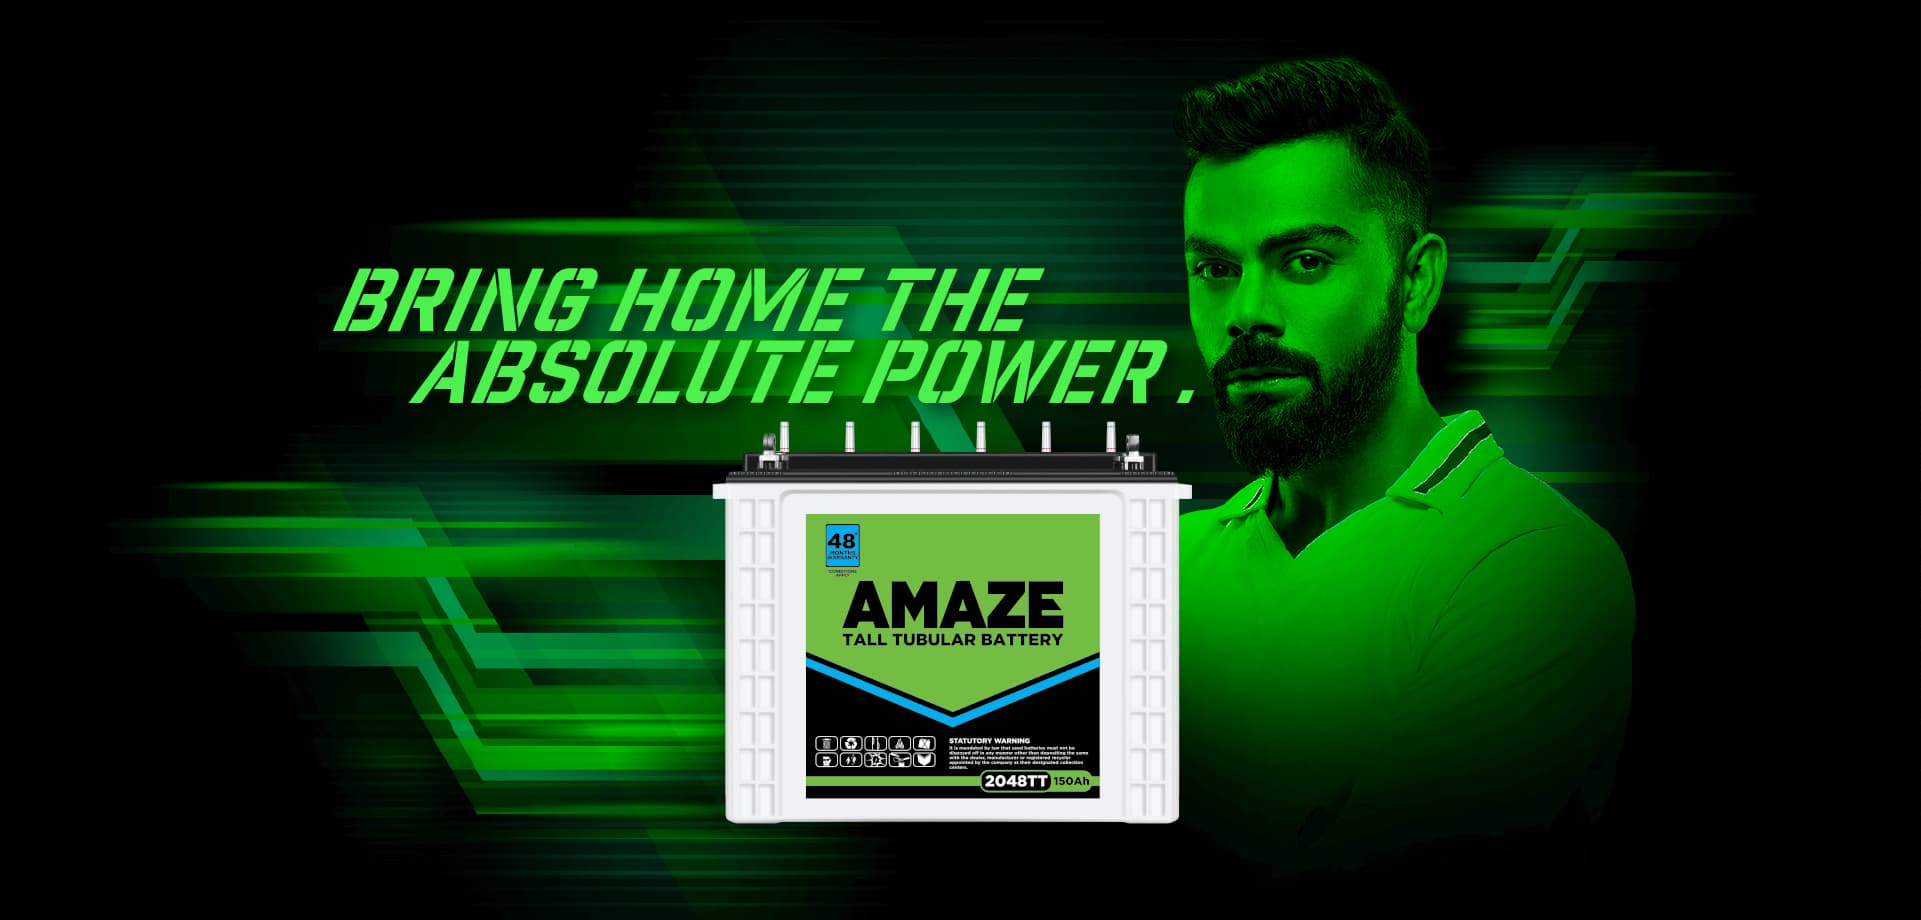 Amaze 2036TT Inverter Battery Price